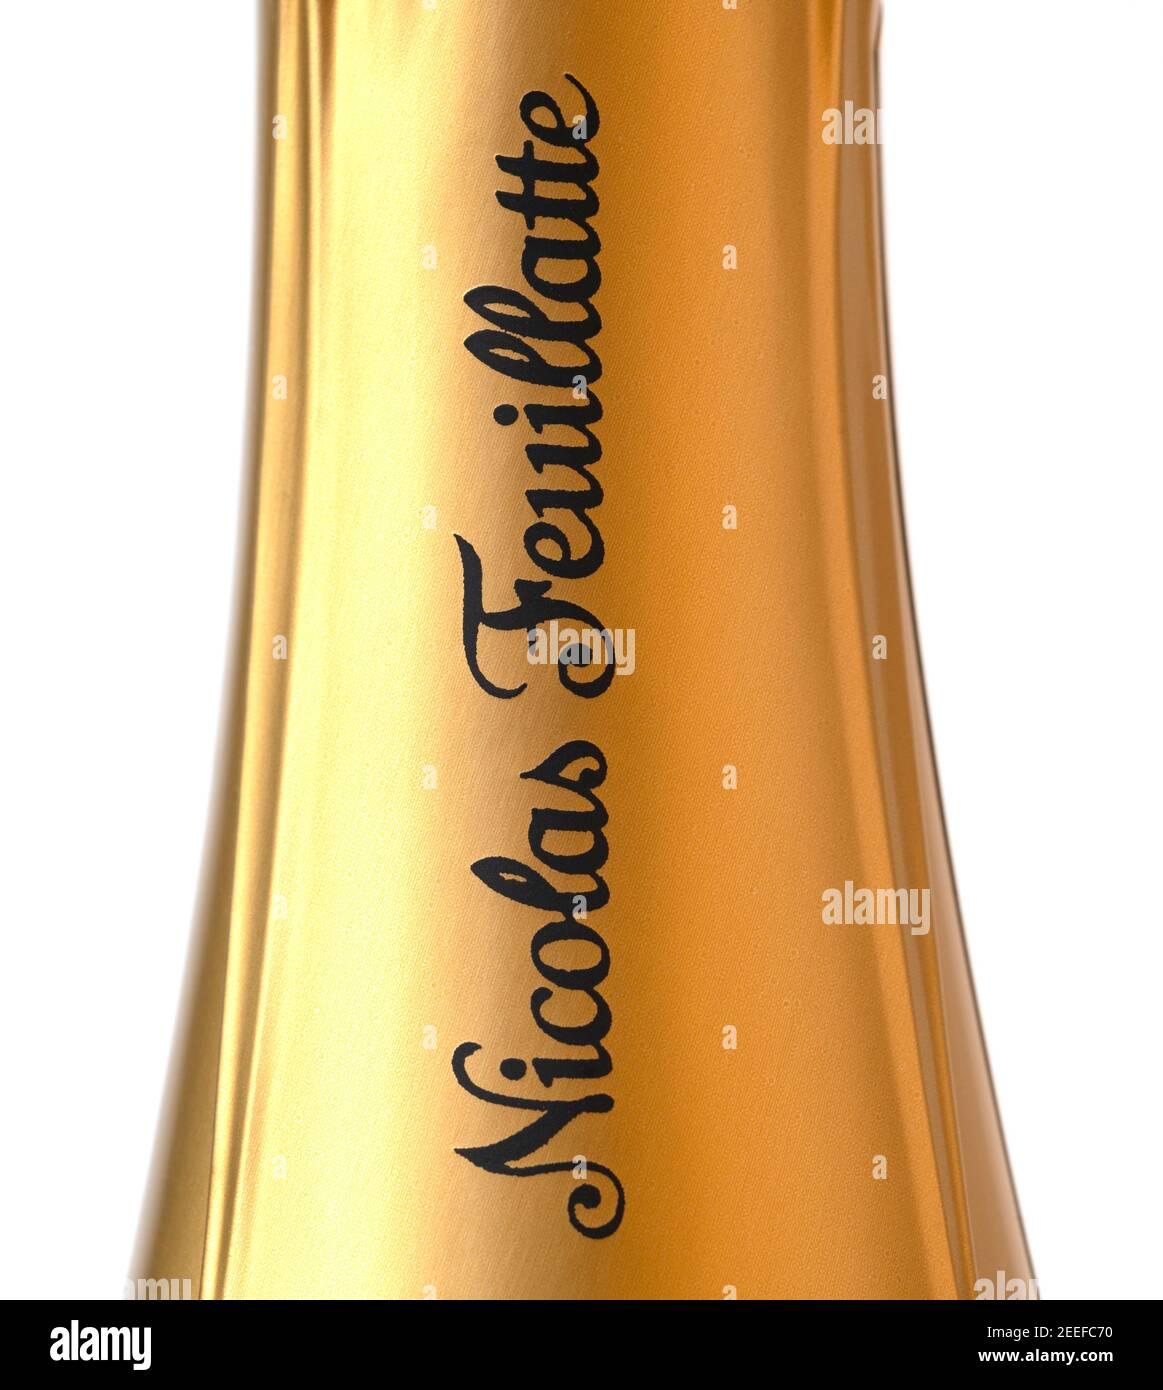 Nicolas Feuillatte Champagne bottle neck foil label closeup Stock Photo